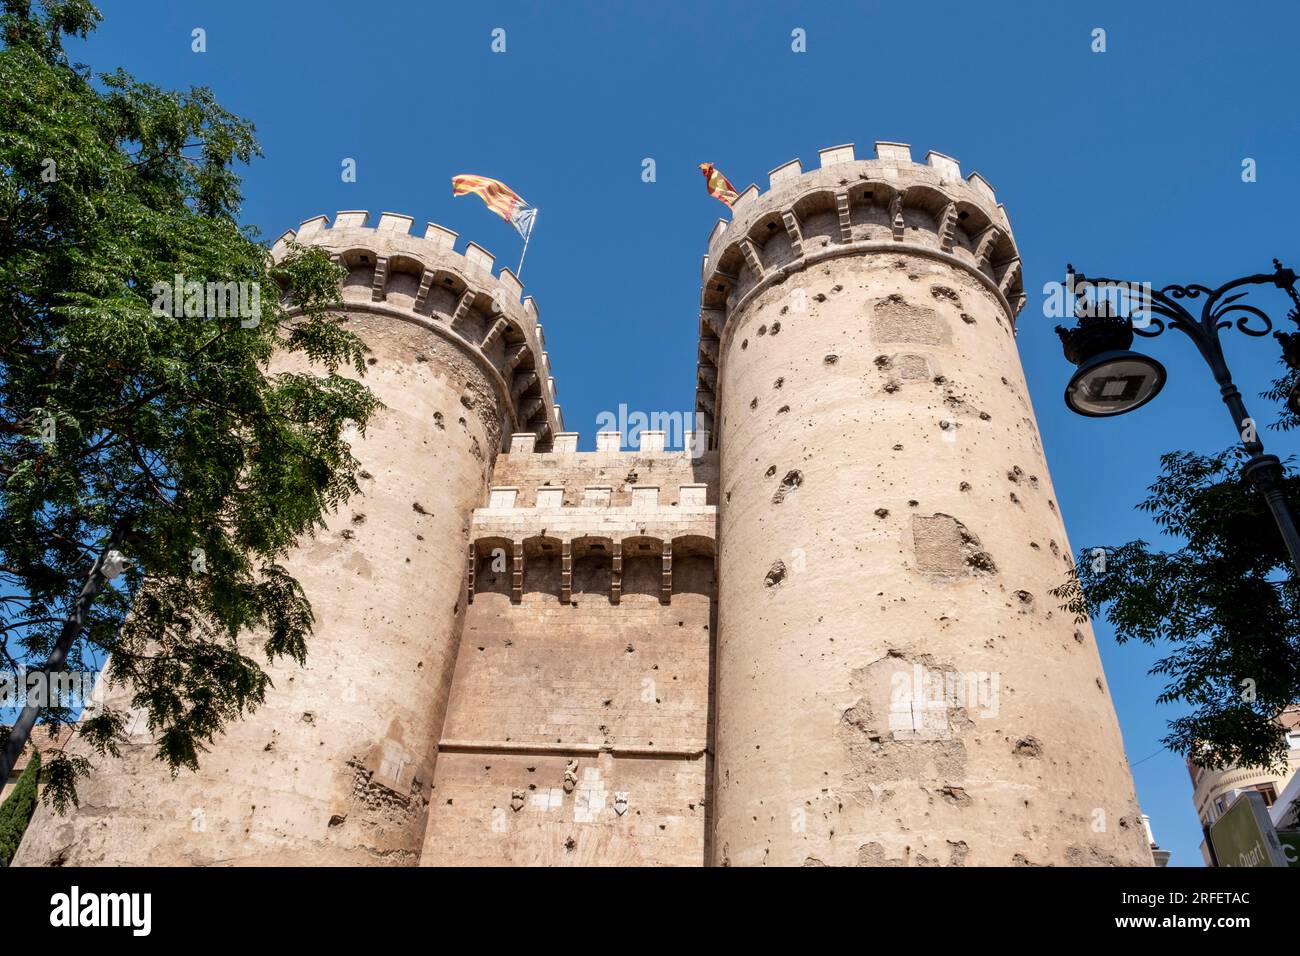 Spanien, Valencia, Tours de Quart, zwei gotische Verteidigungstürme, die im 15. Jahrhundert erbaut wurden Stockfoto